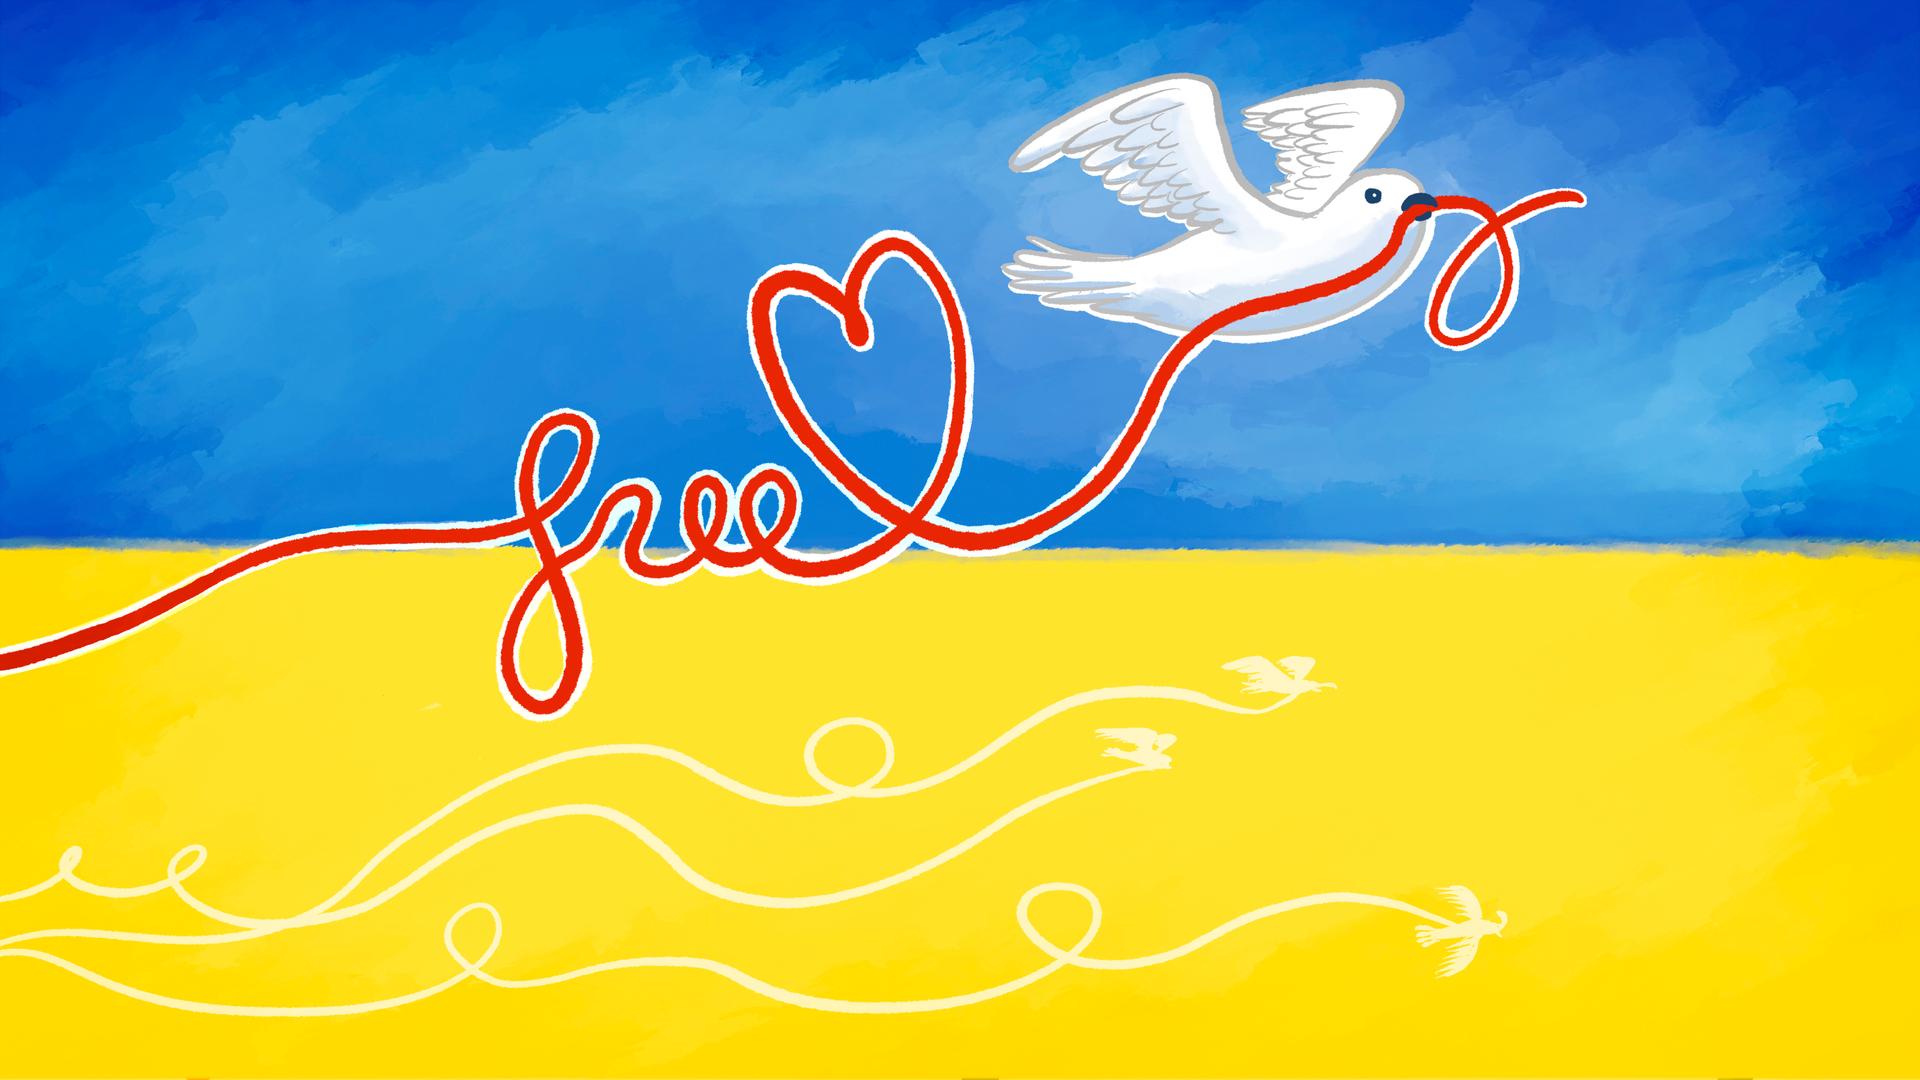 Free solidaire avec l’Ukraine : forfait mobile gratuit pour les réfugiés ukrainiens